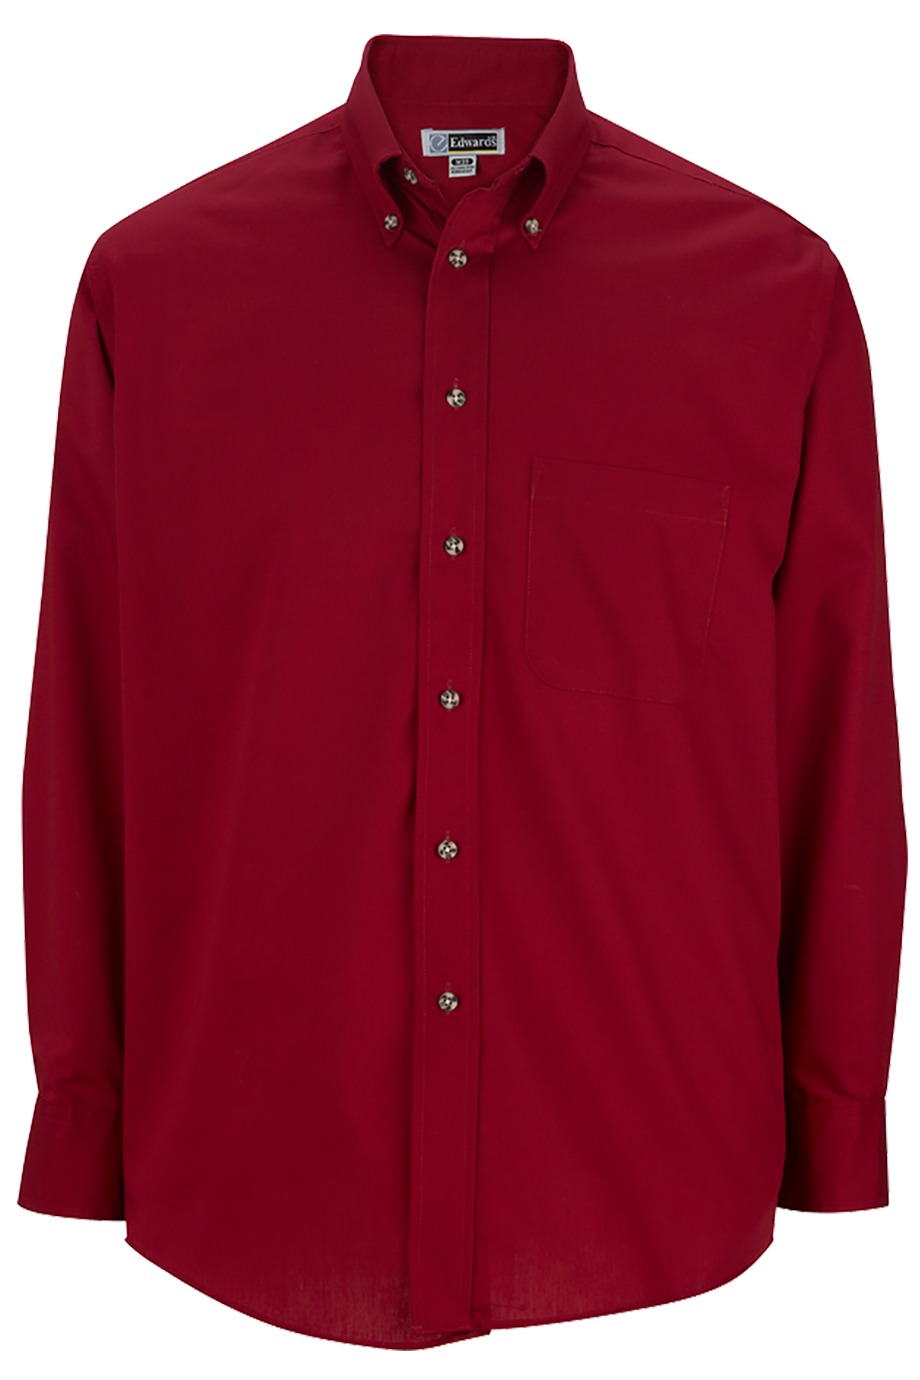 Edwards Garment 1280 - Men's Easy Care Poplin Shirt